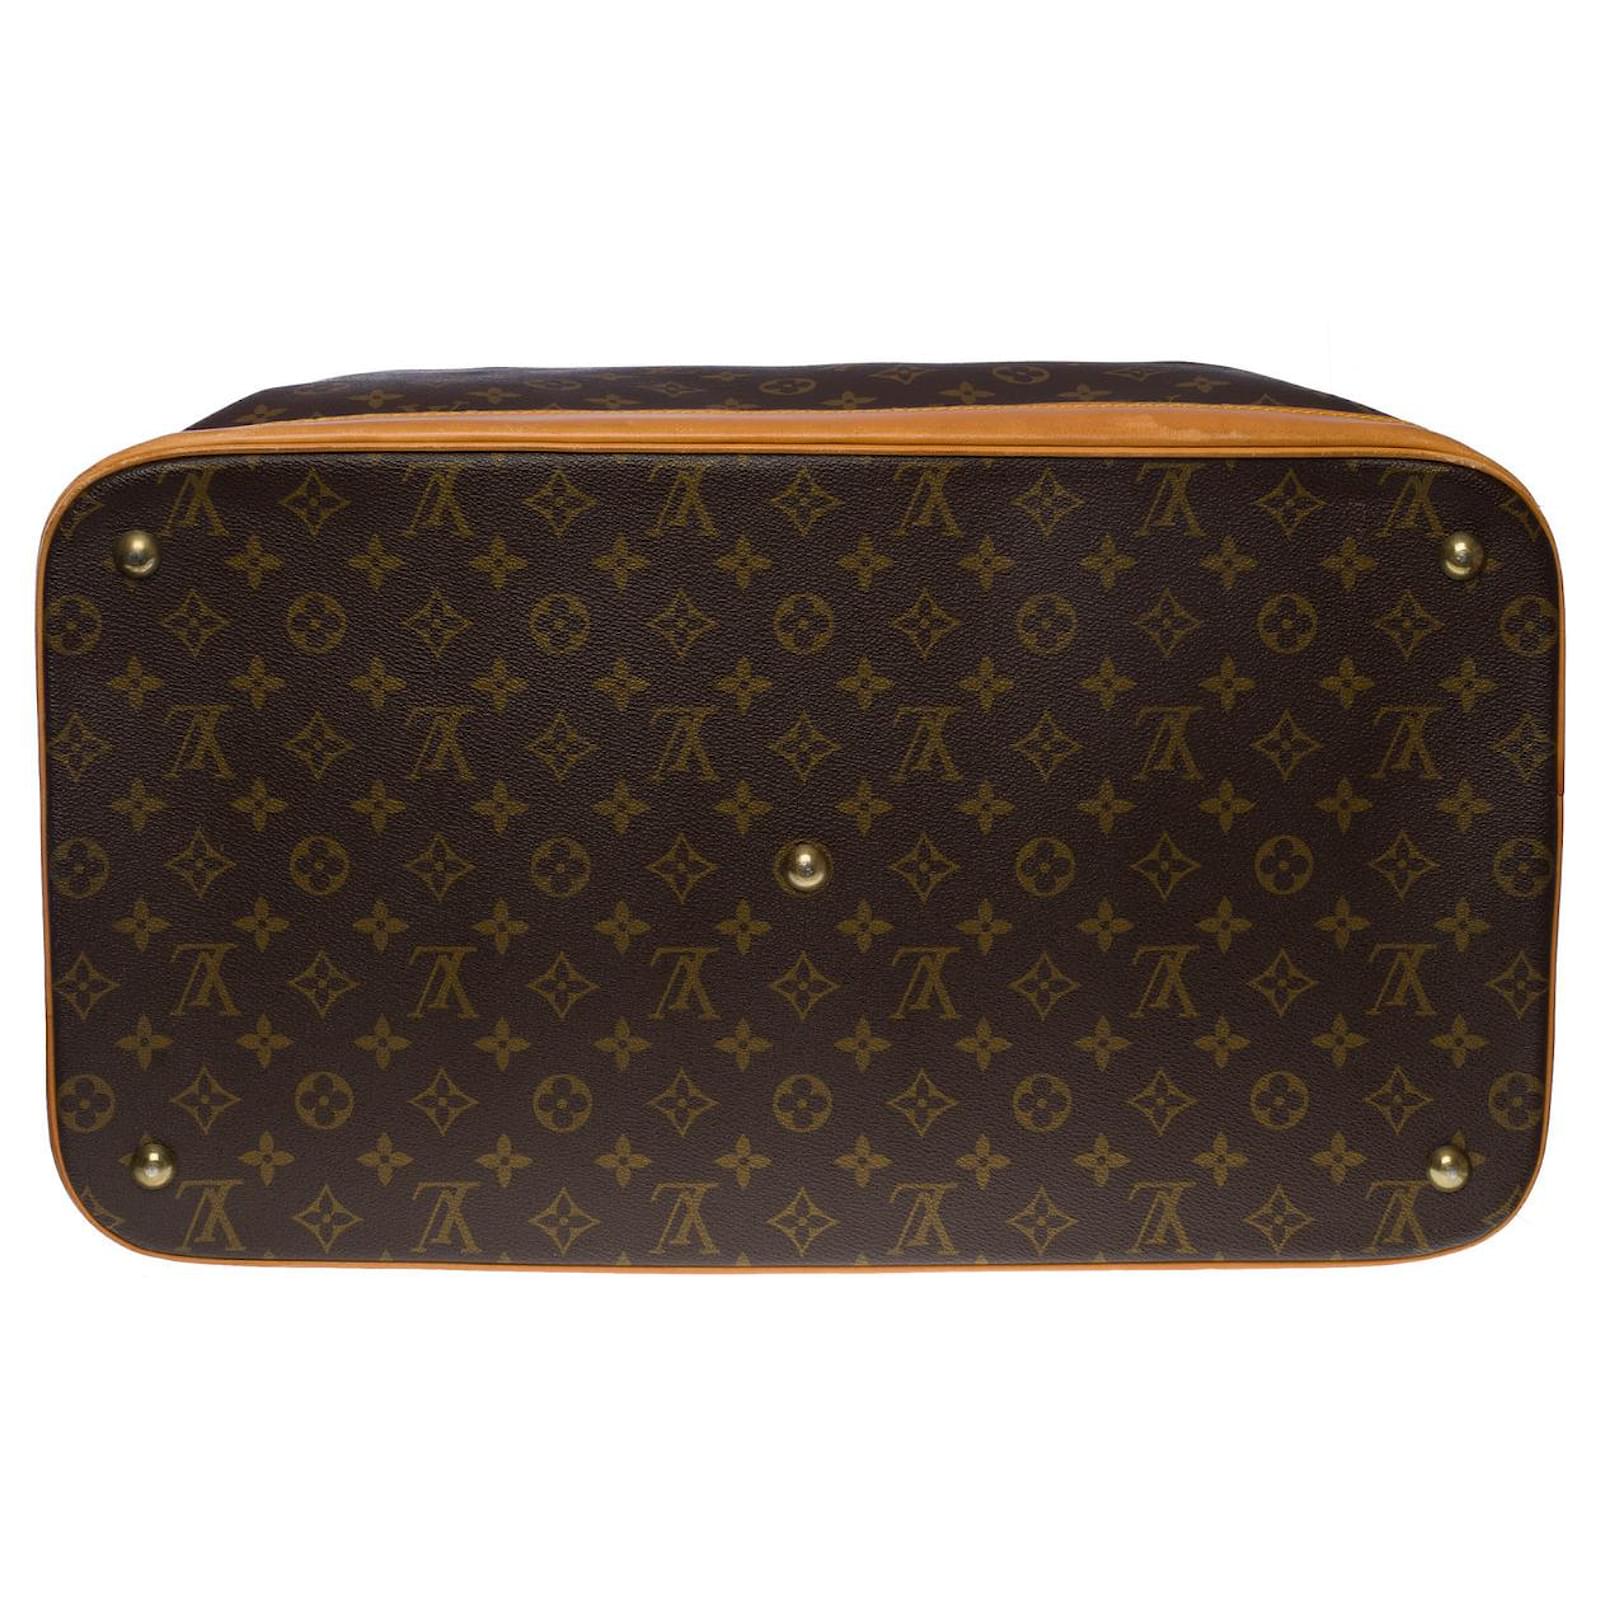 Louis Vuitton cruiser travel bag 45 in brown canvas - 101064 Cloth